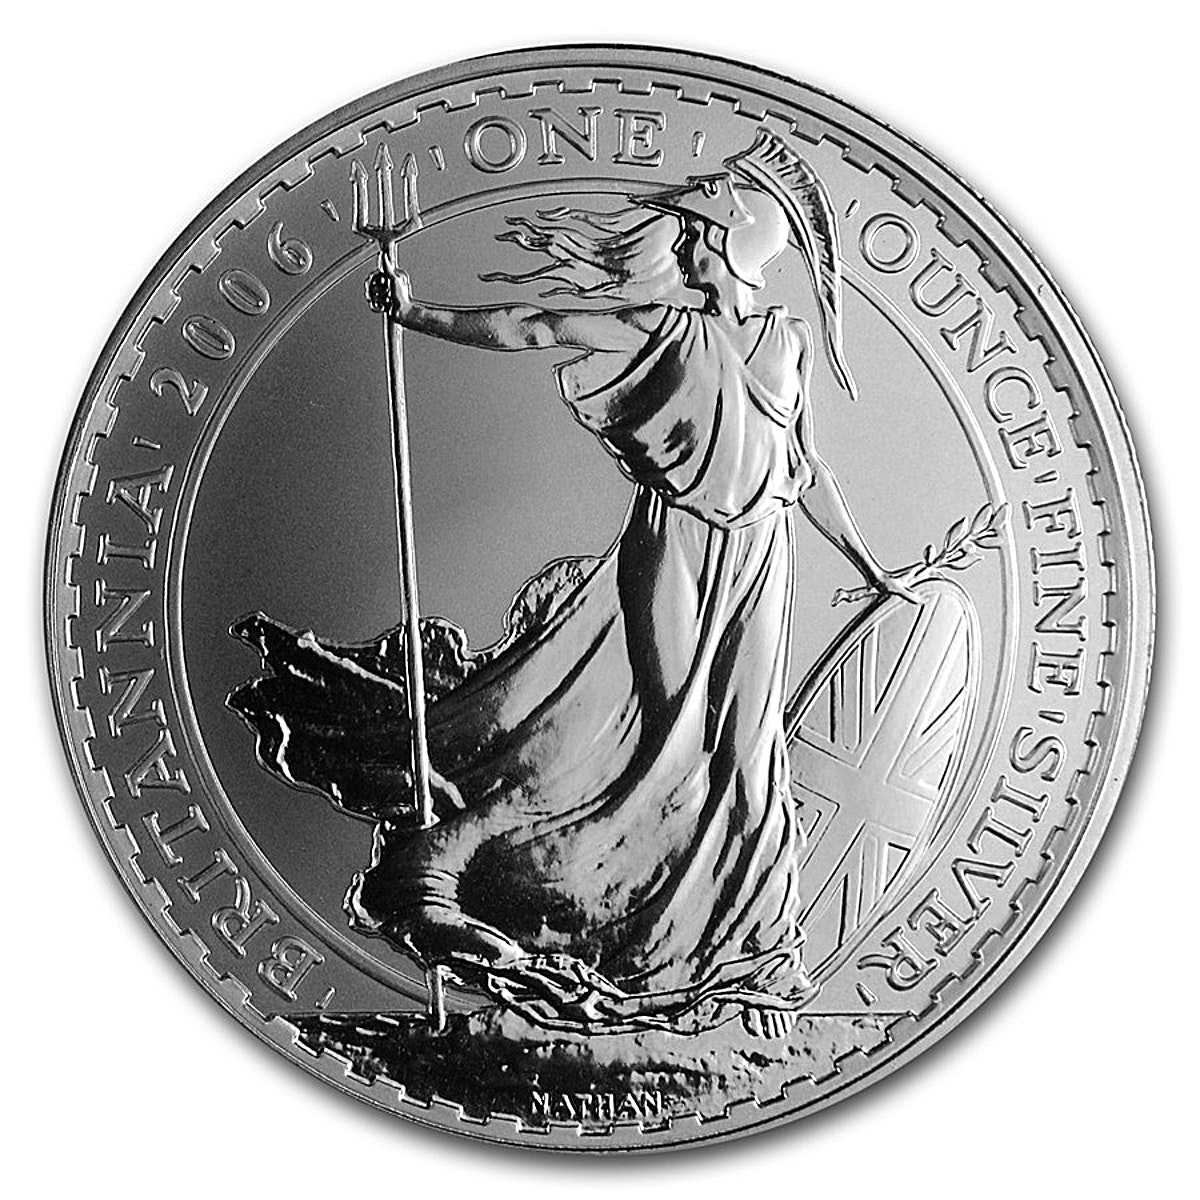 United Kingdom Silver Britannia 2006 - Circulated in Good Condition - 1 oz